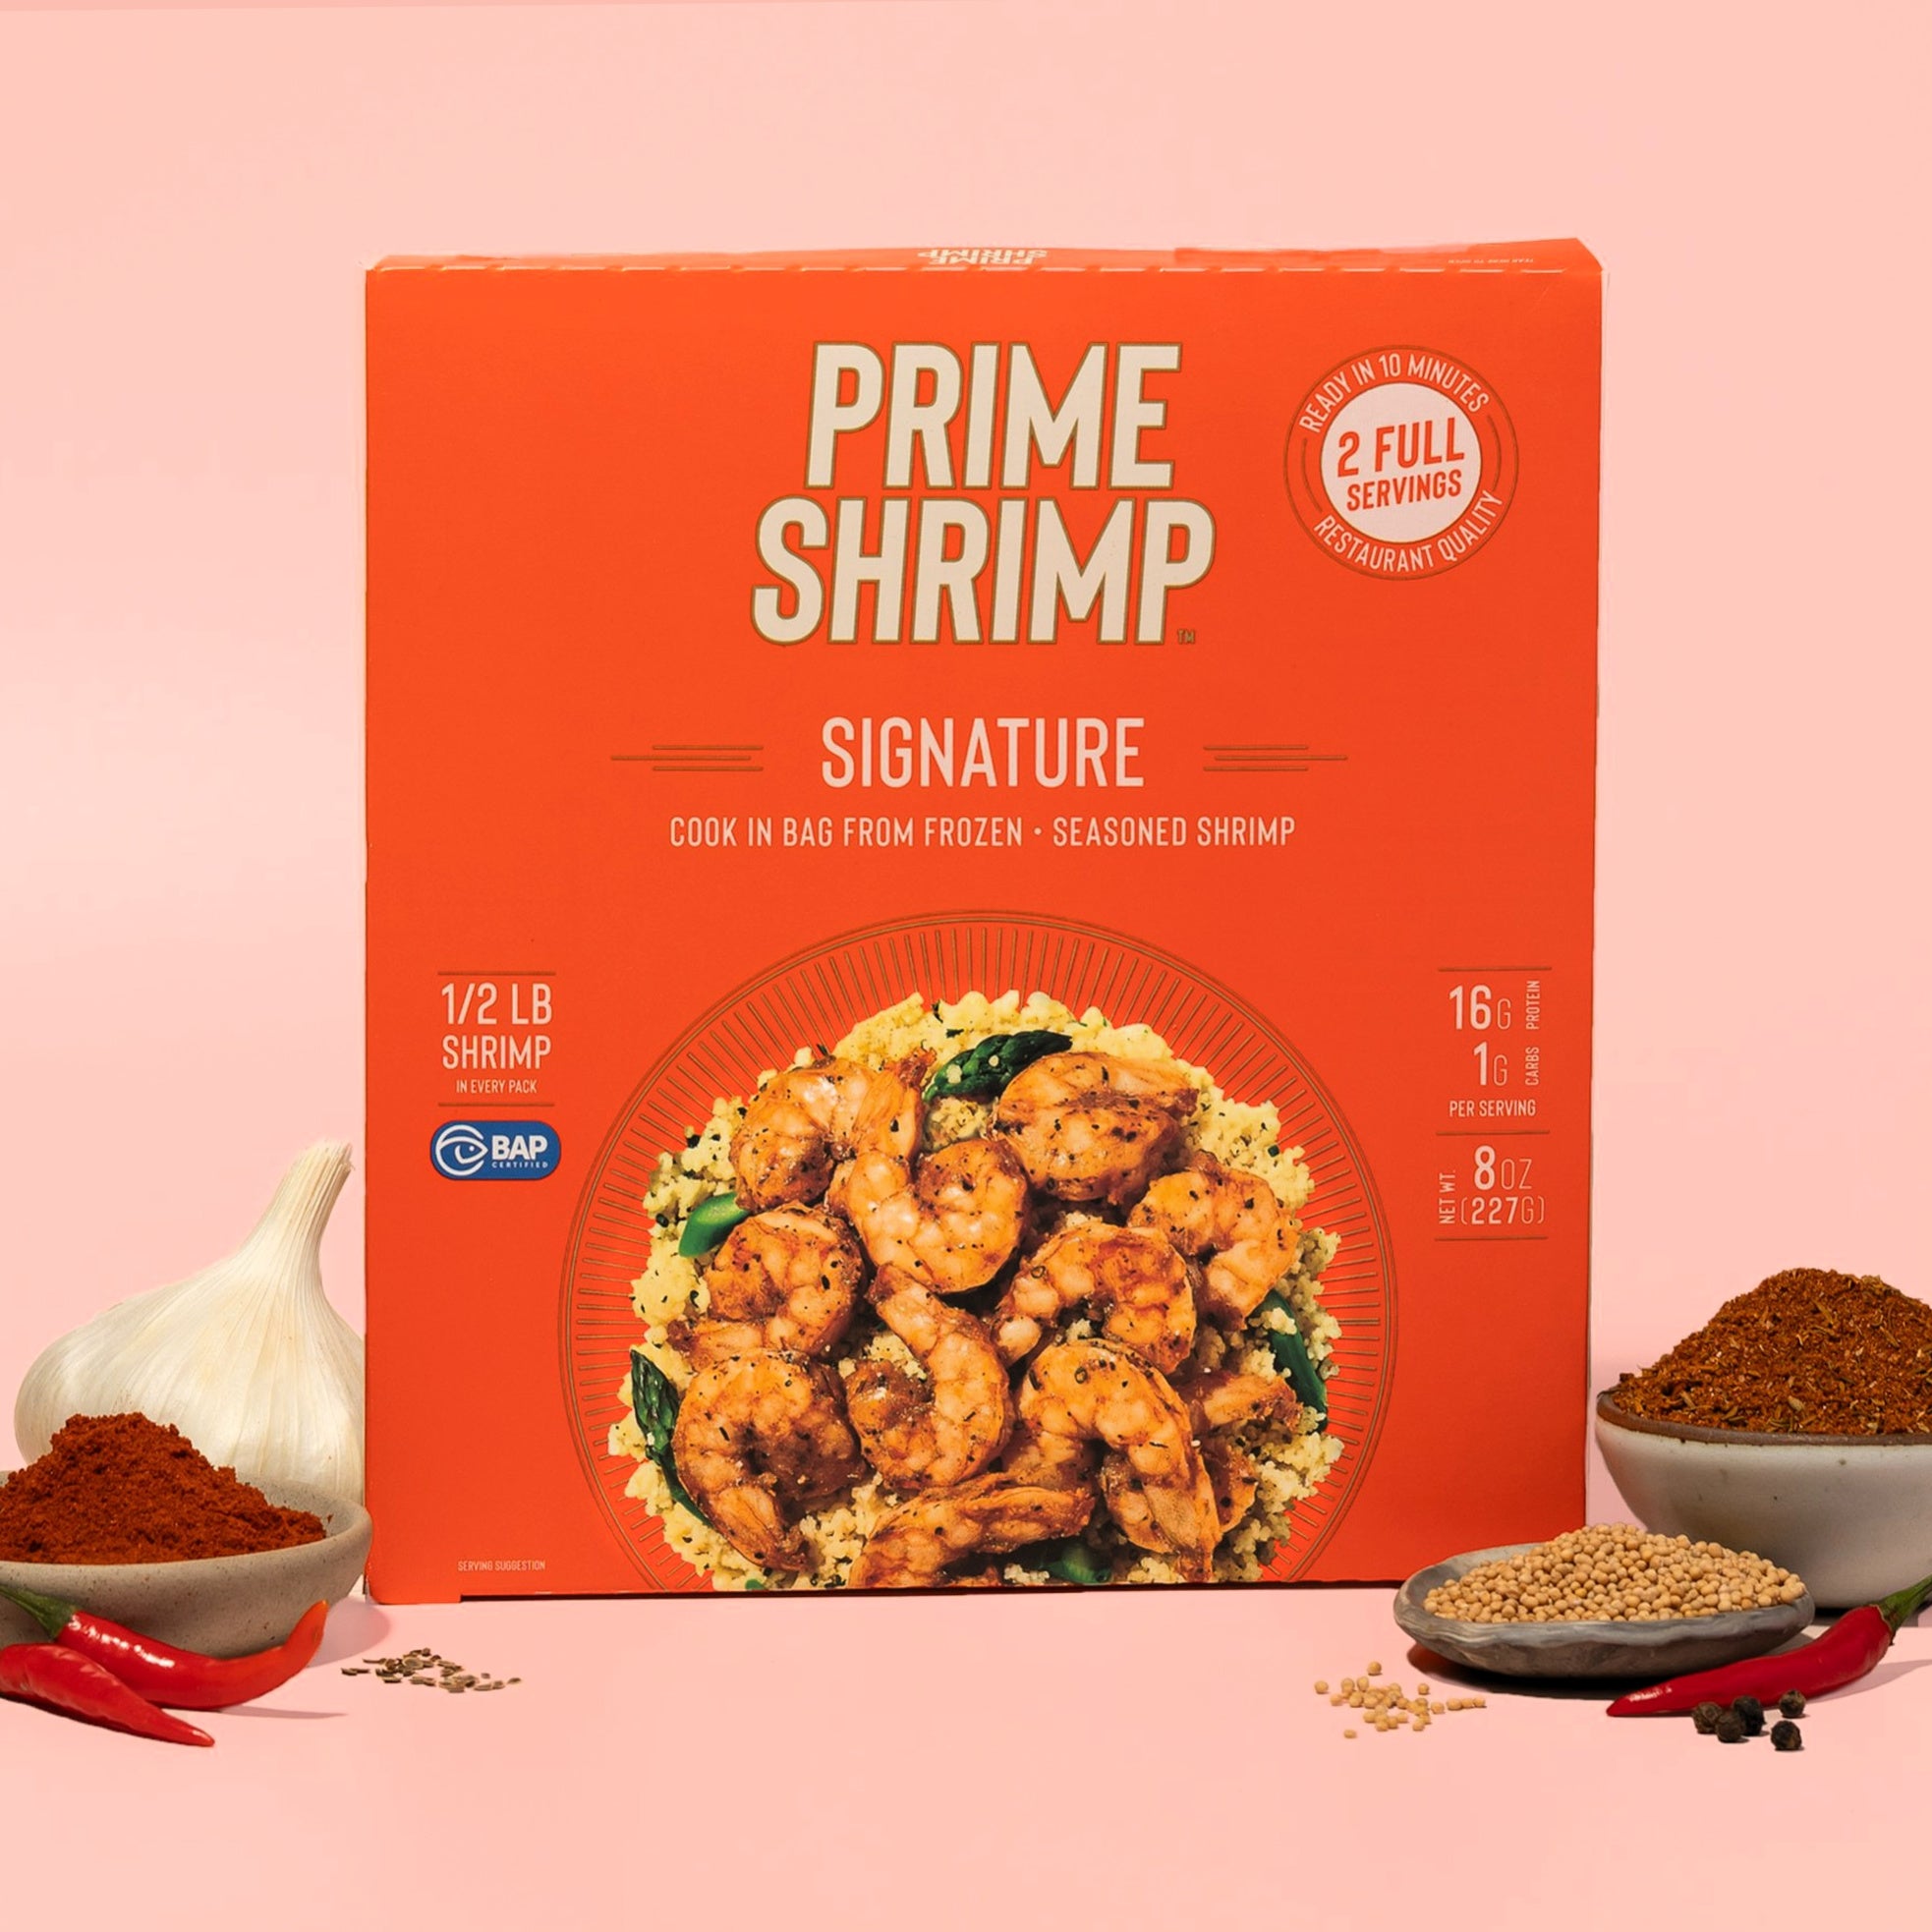 Prime-Shrimp-Signature-_-NWK-Creative-3_1.jpg